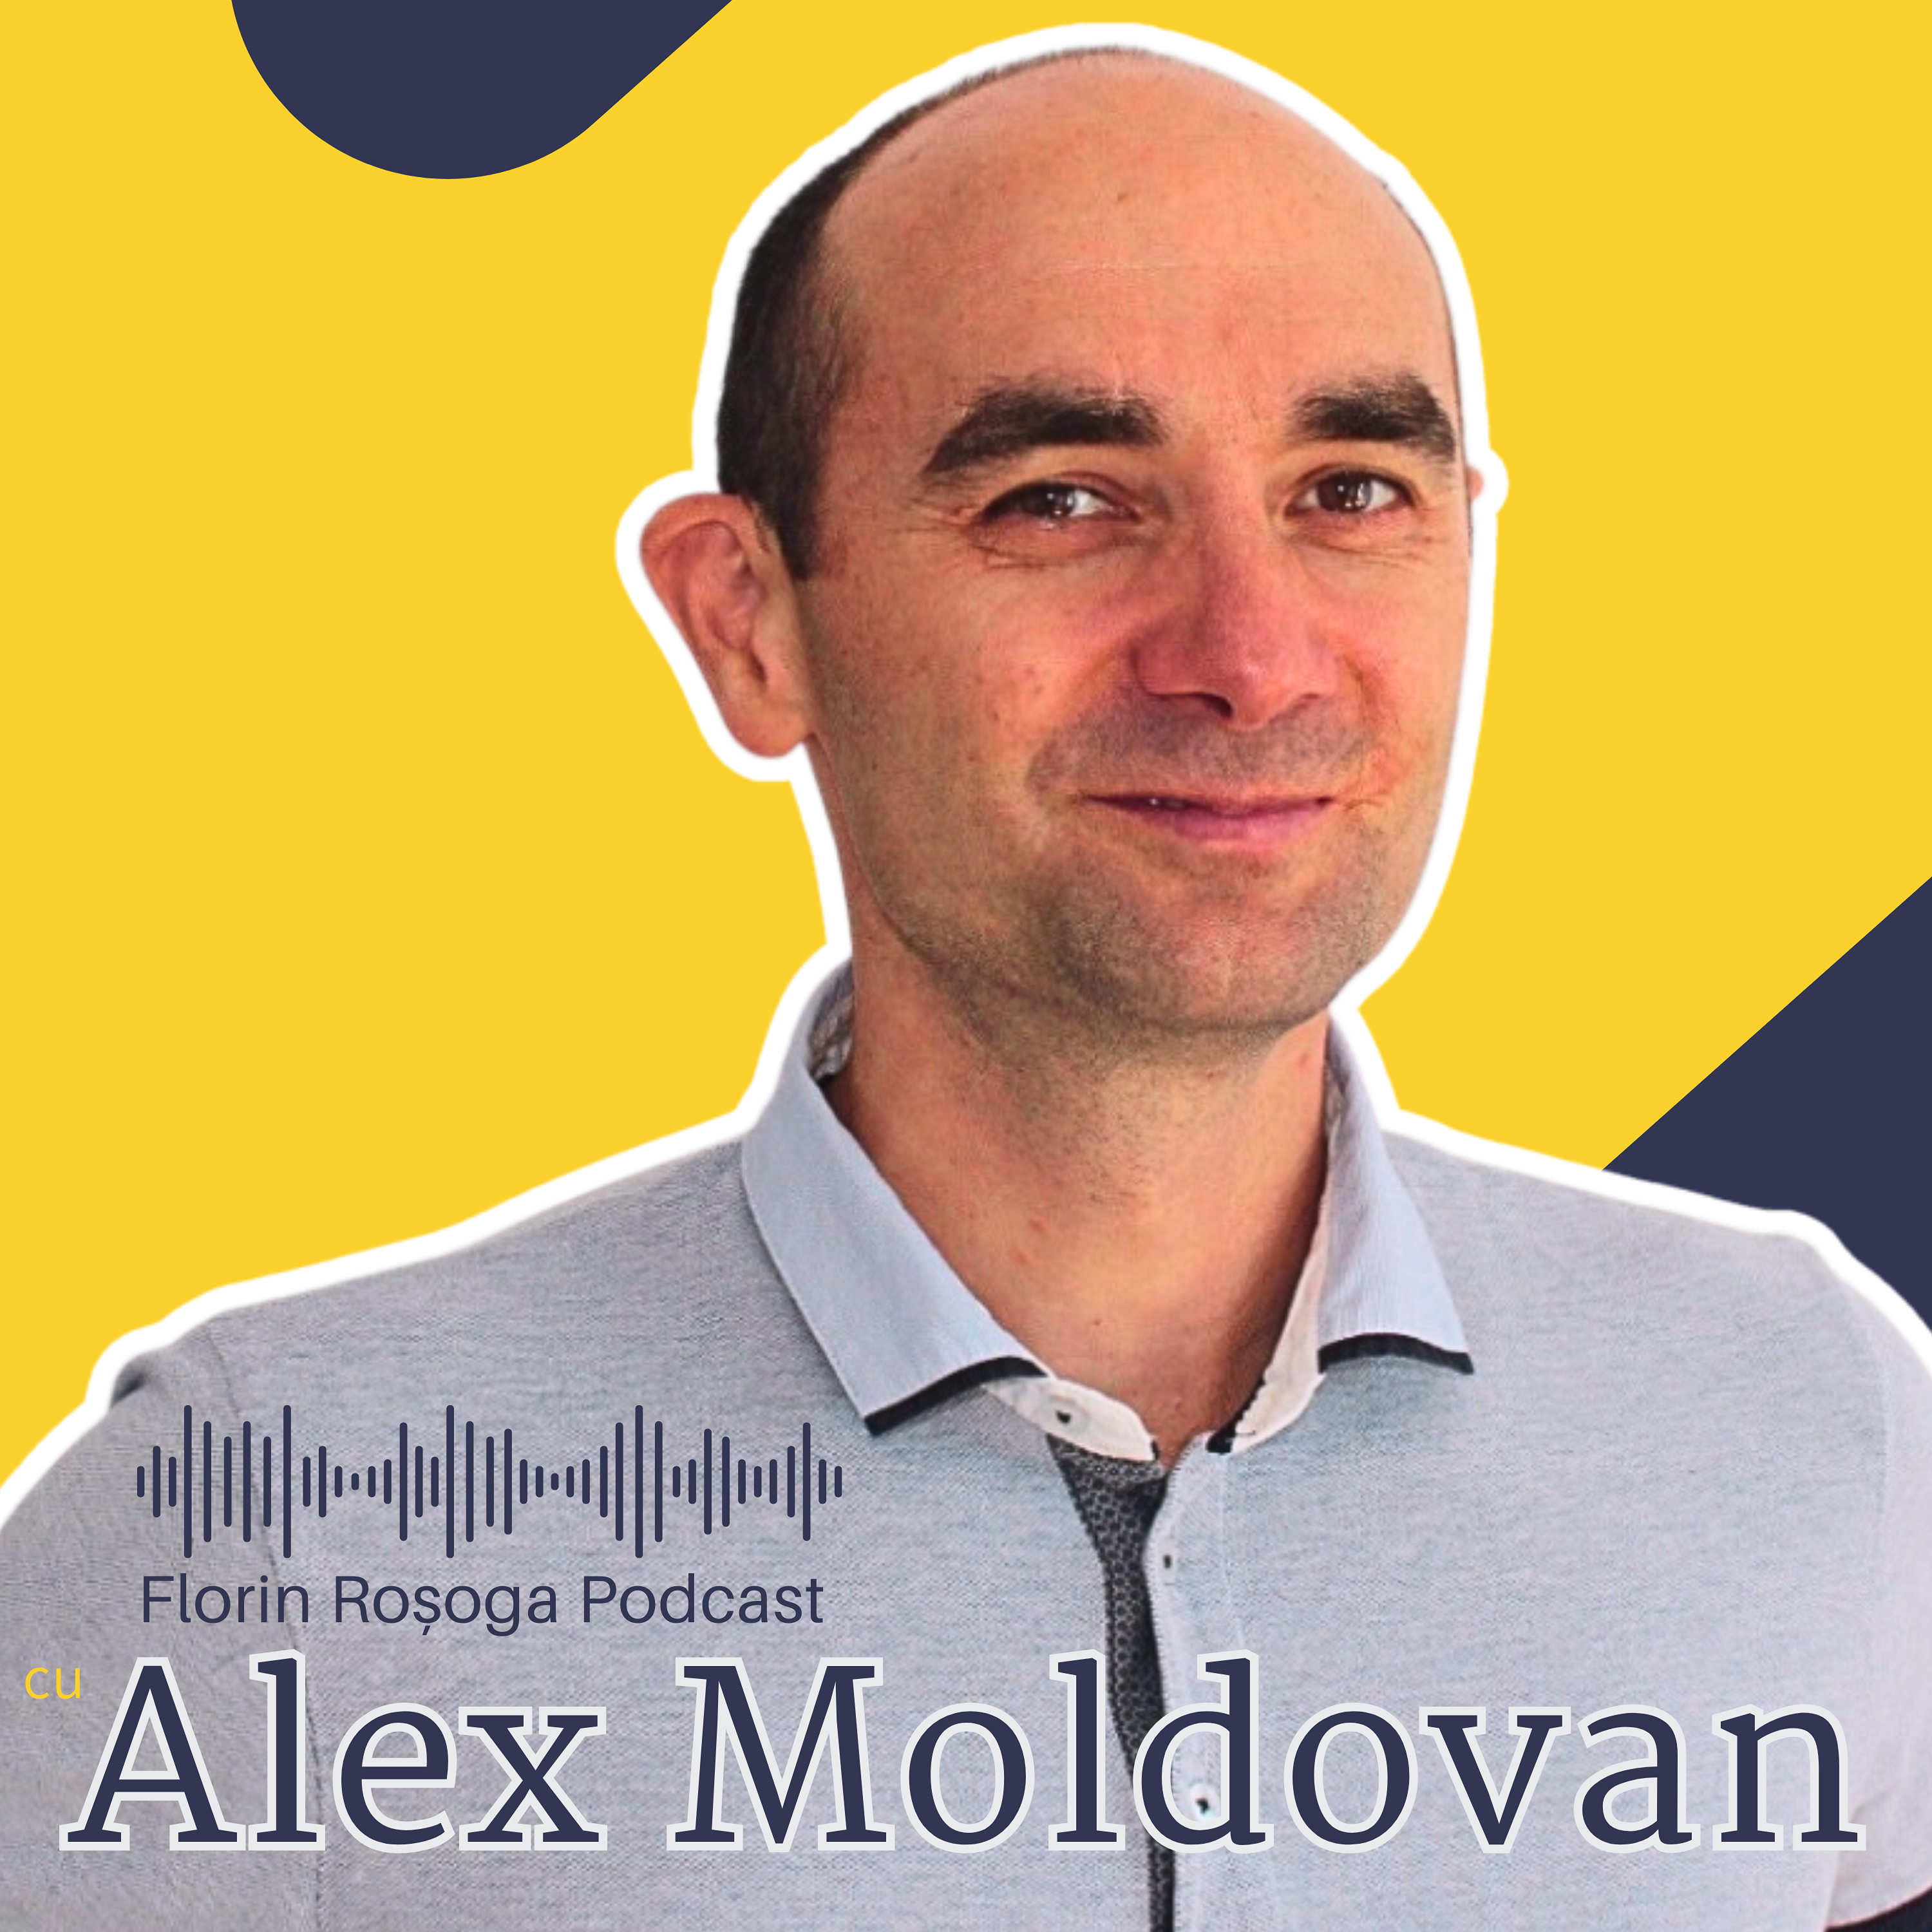 Alex Moldovan: Relații de calitate folosind Comunicarea Nonviolentă